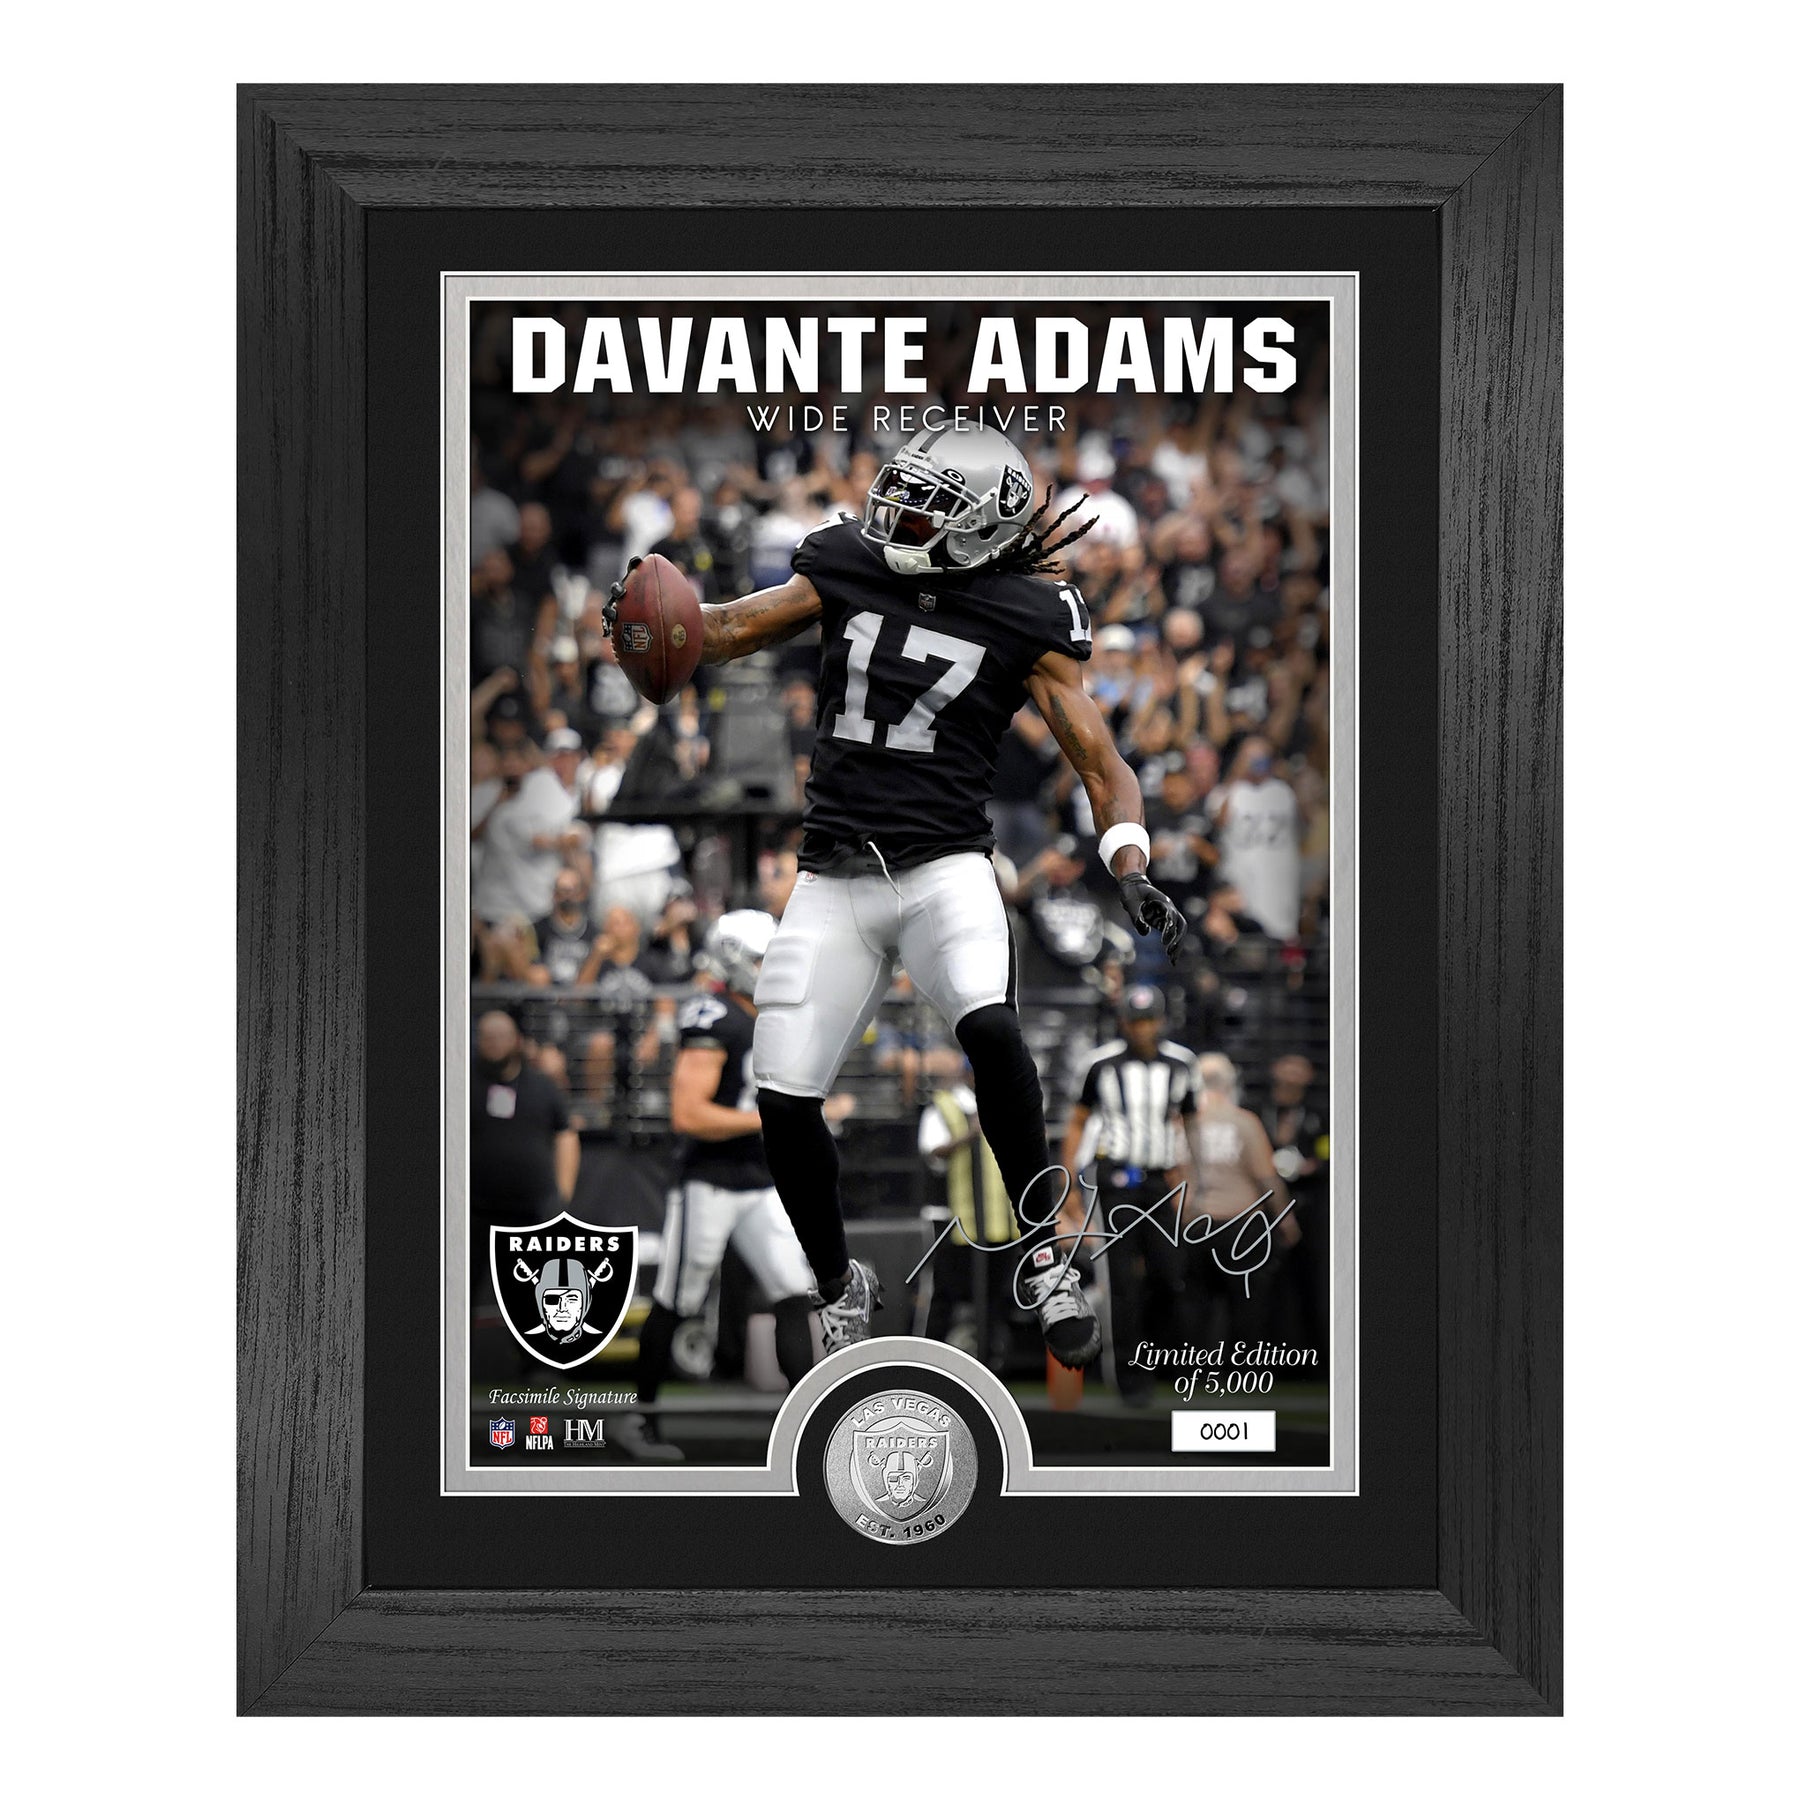 Davante Adams (Raiders) Player Coin in Framed Photo